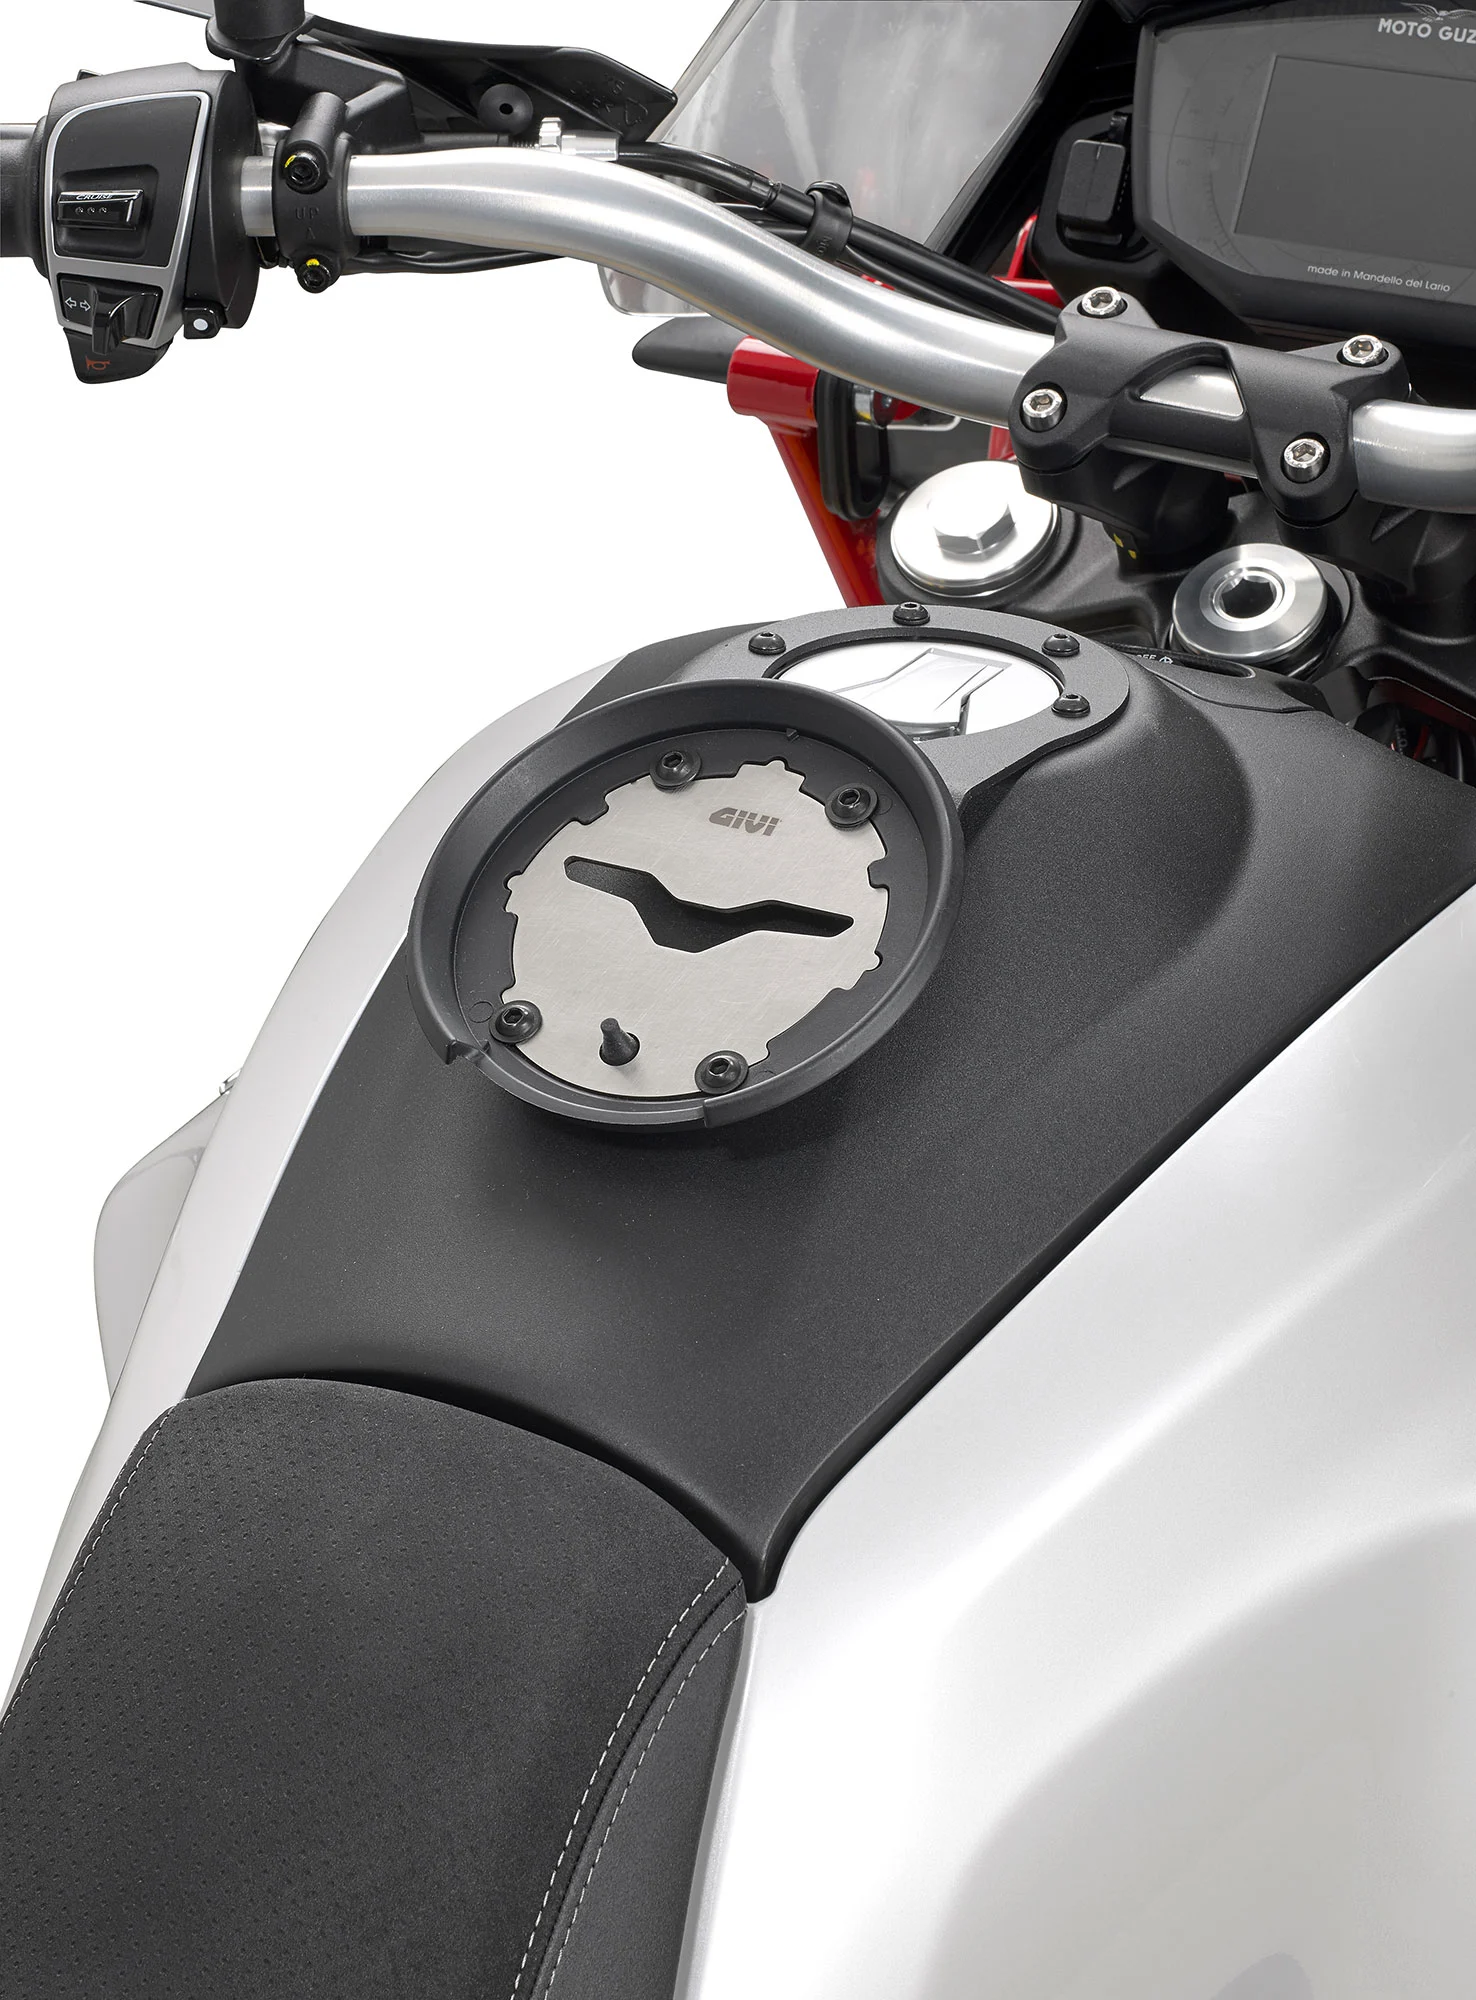 Sacoche réservoir Xstream XS307 Givi moto : , sacoche  réservoir de moto